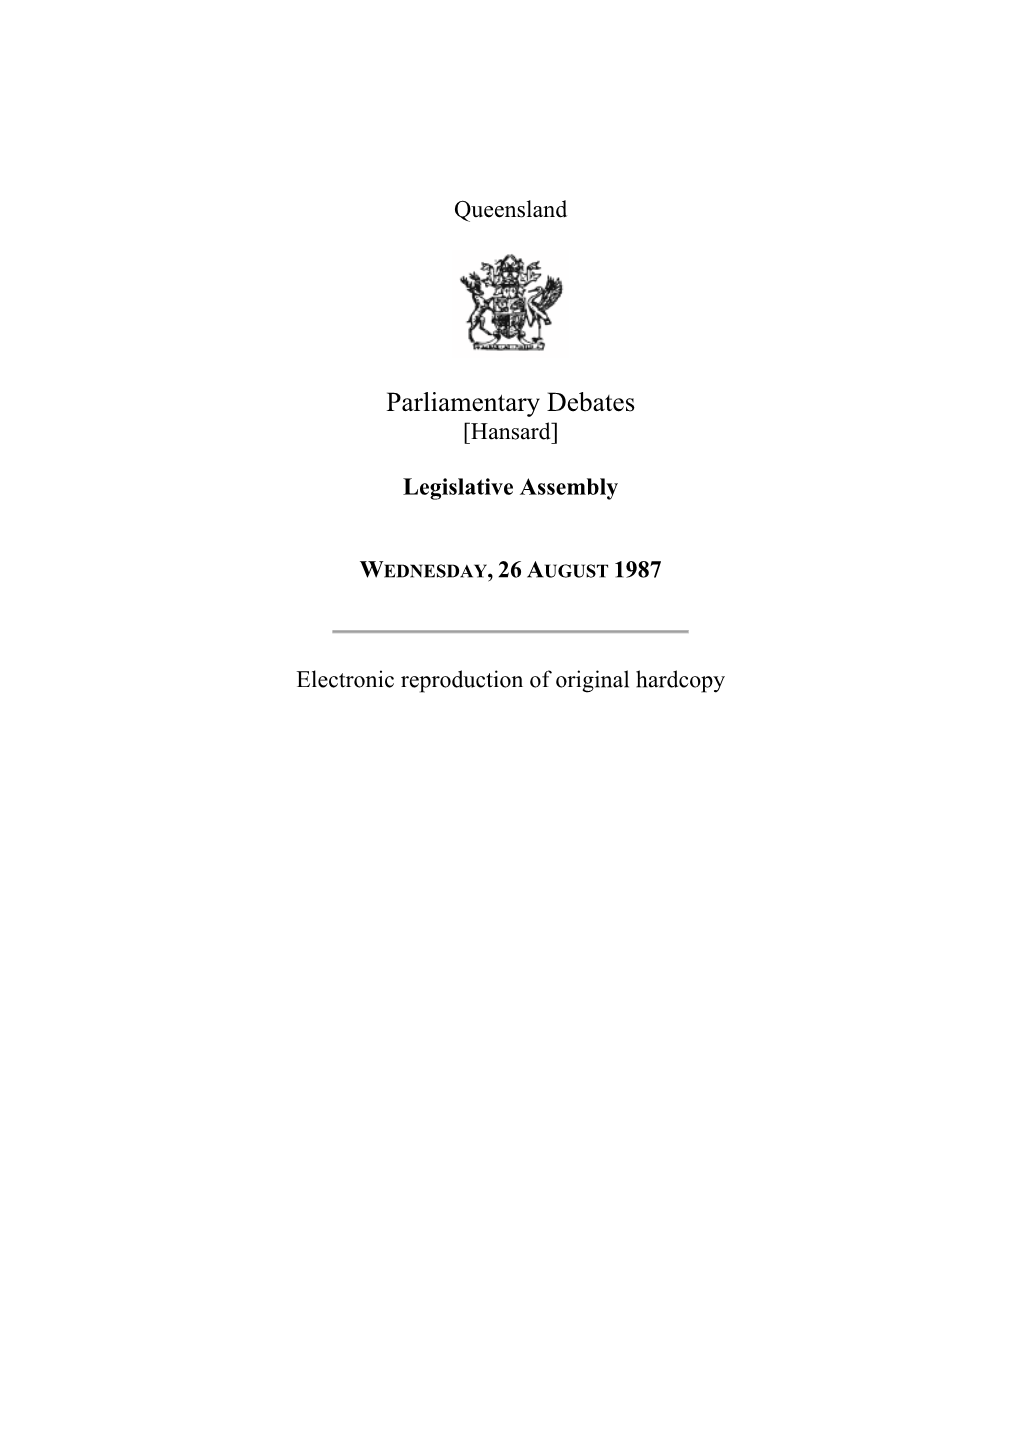 Legislative Assembly Hansard 1987